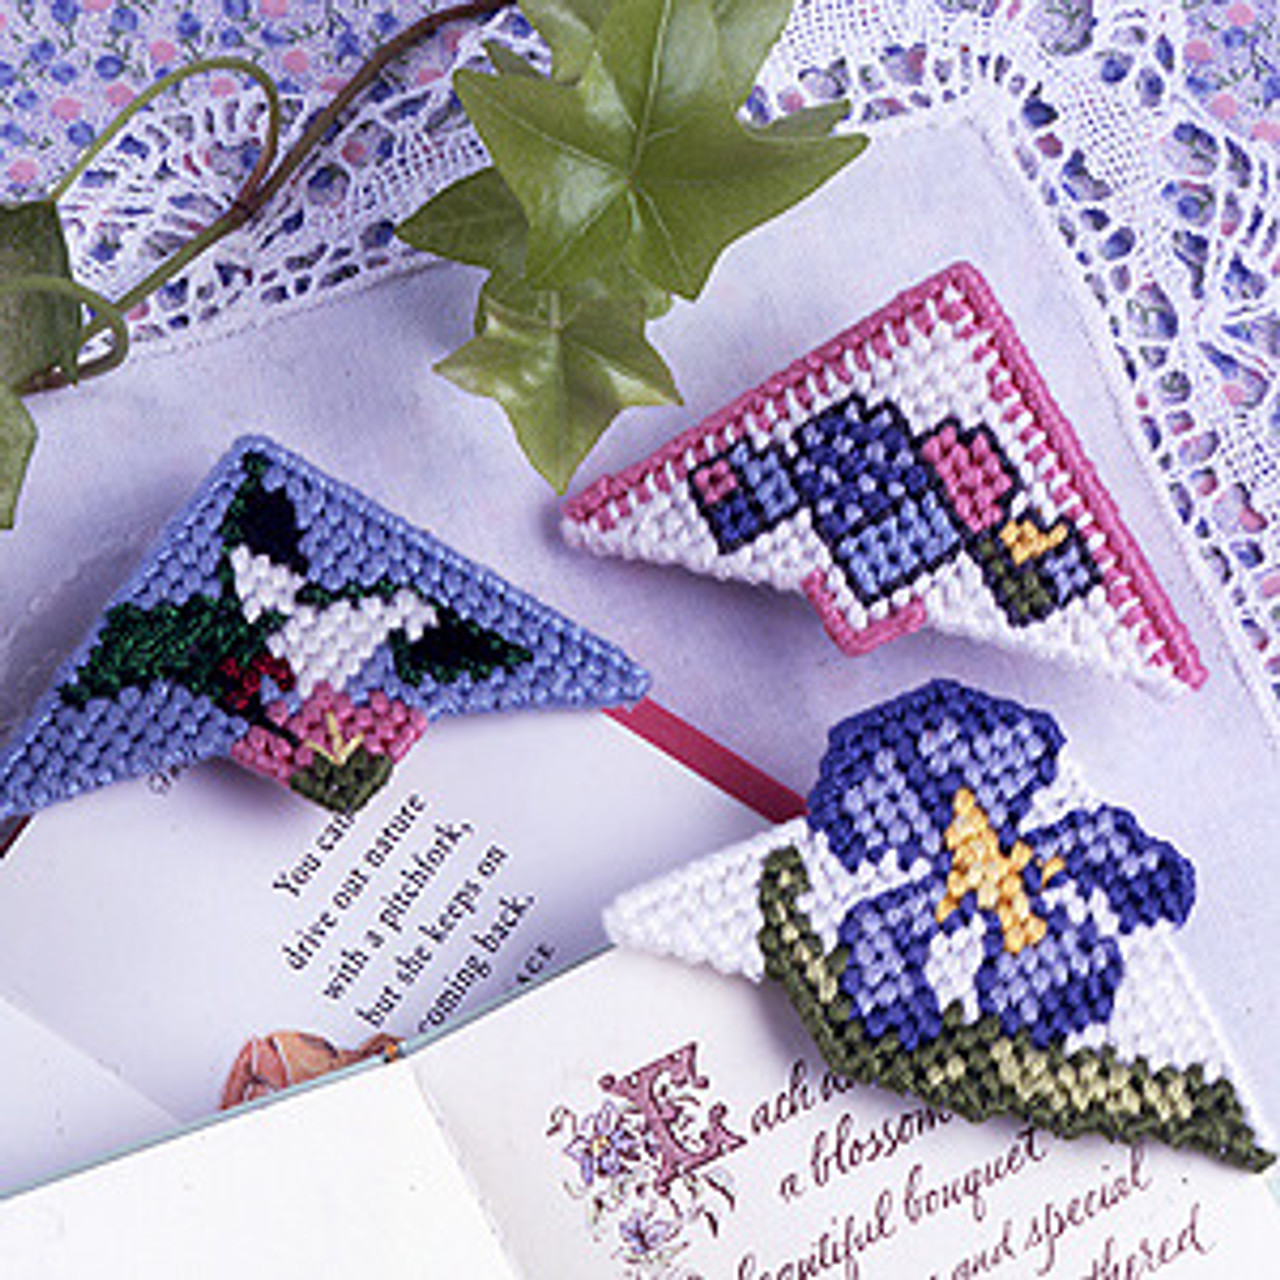 DIY Colorful Beaded Bookmark Making Kit DIY Bookmarks Arts